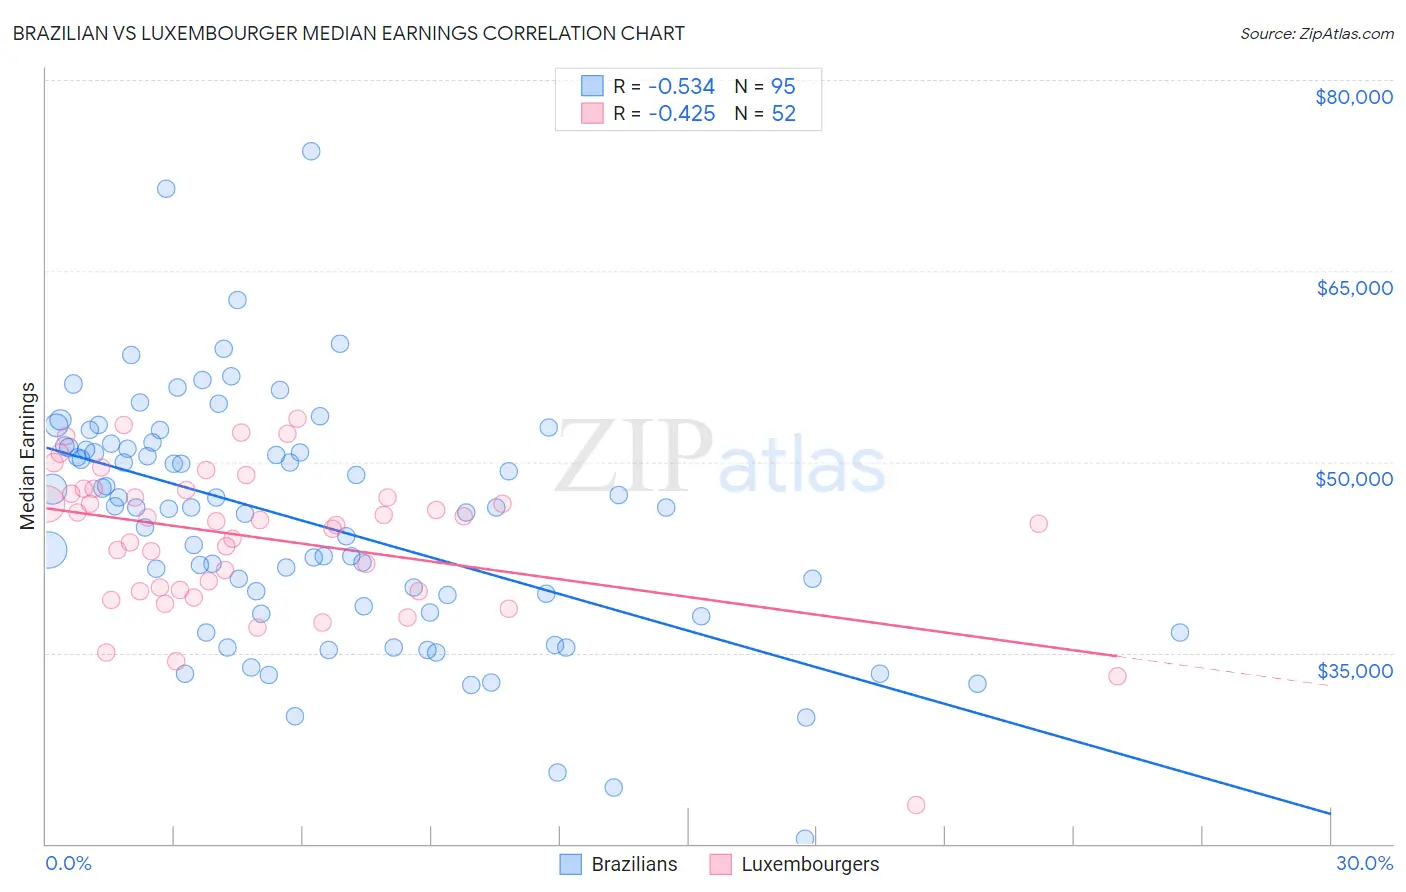 Brazilian vs Luxembourger Median Earnings